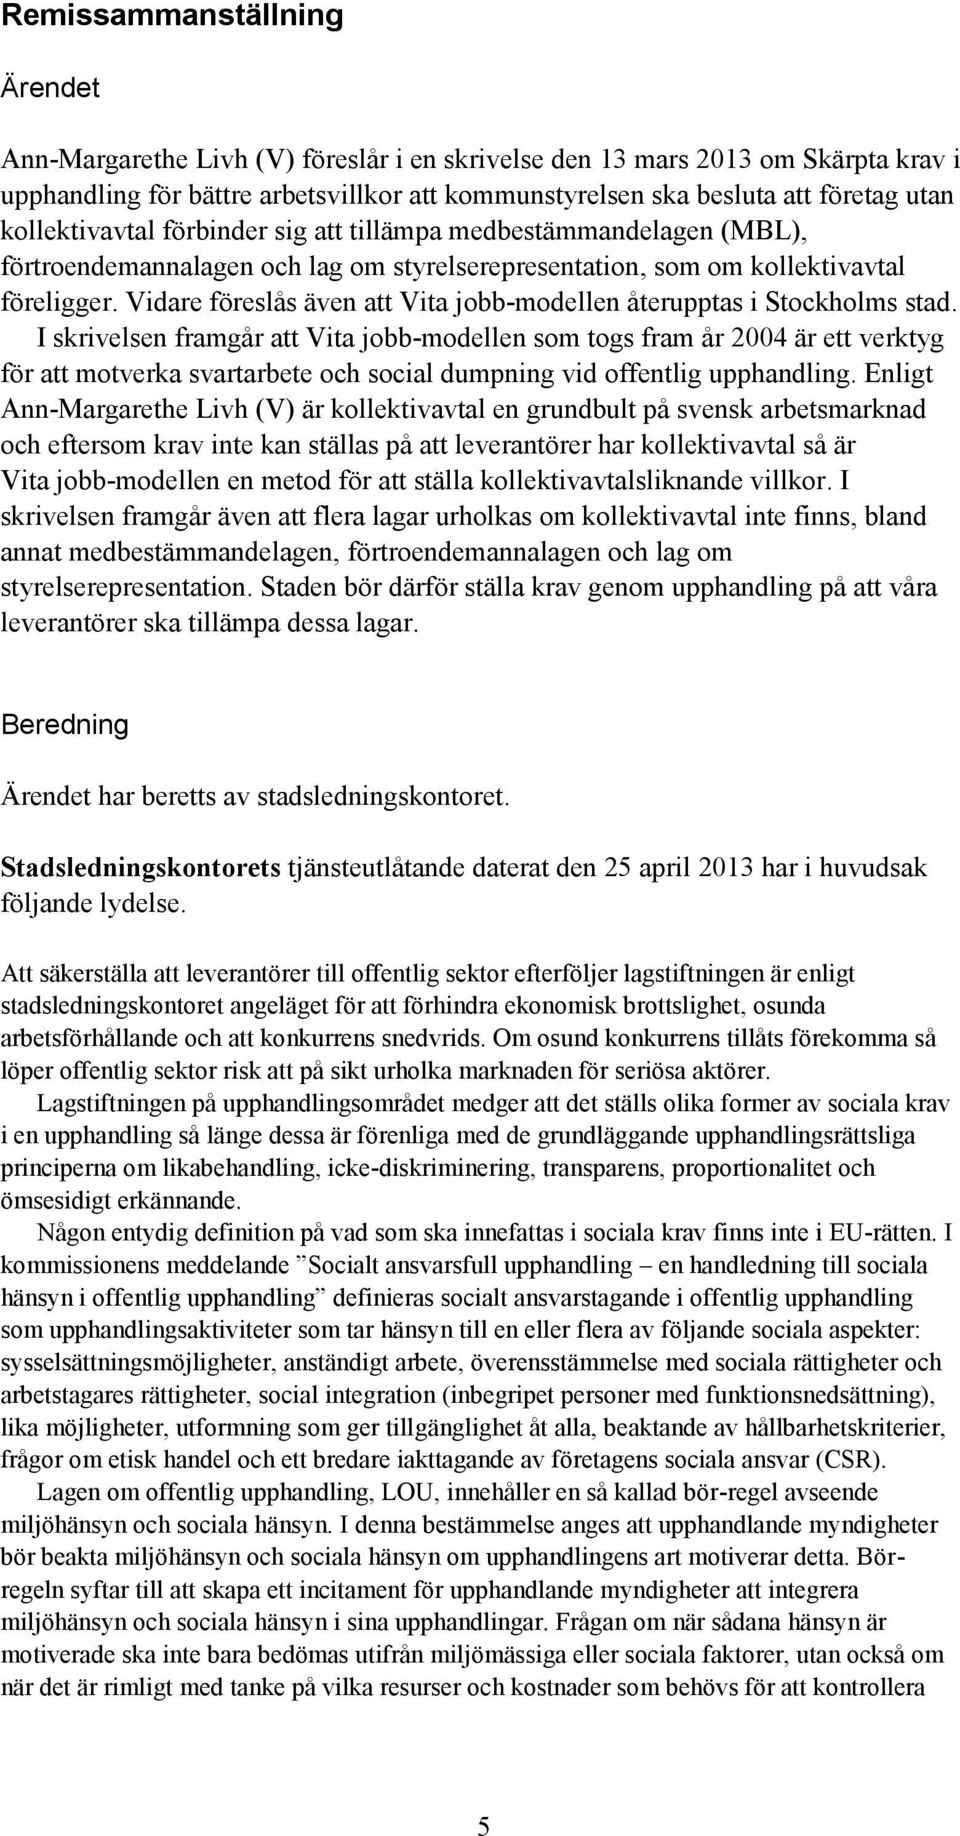 Vidare föreslås även att Vita jobb-modellen återupptas i Stockholms stad.